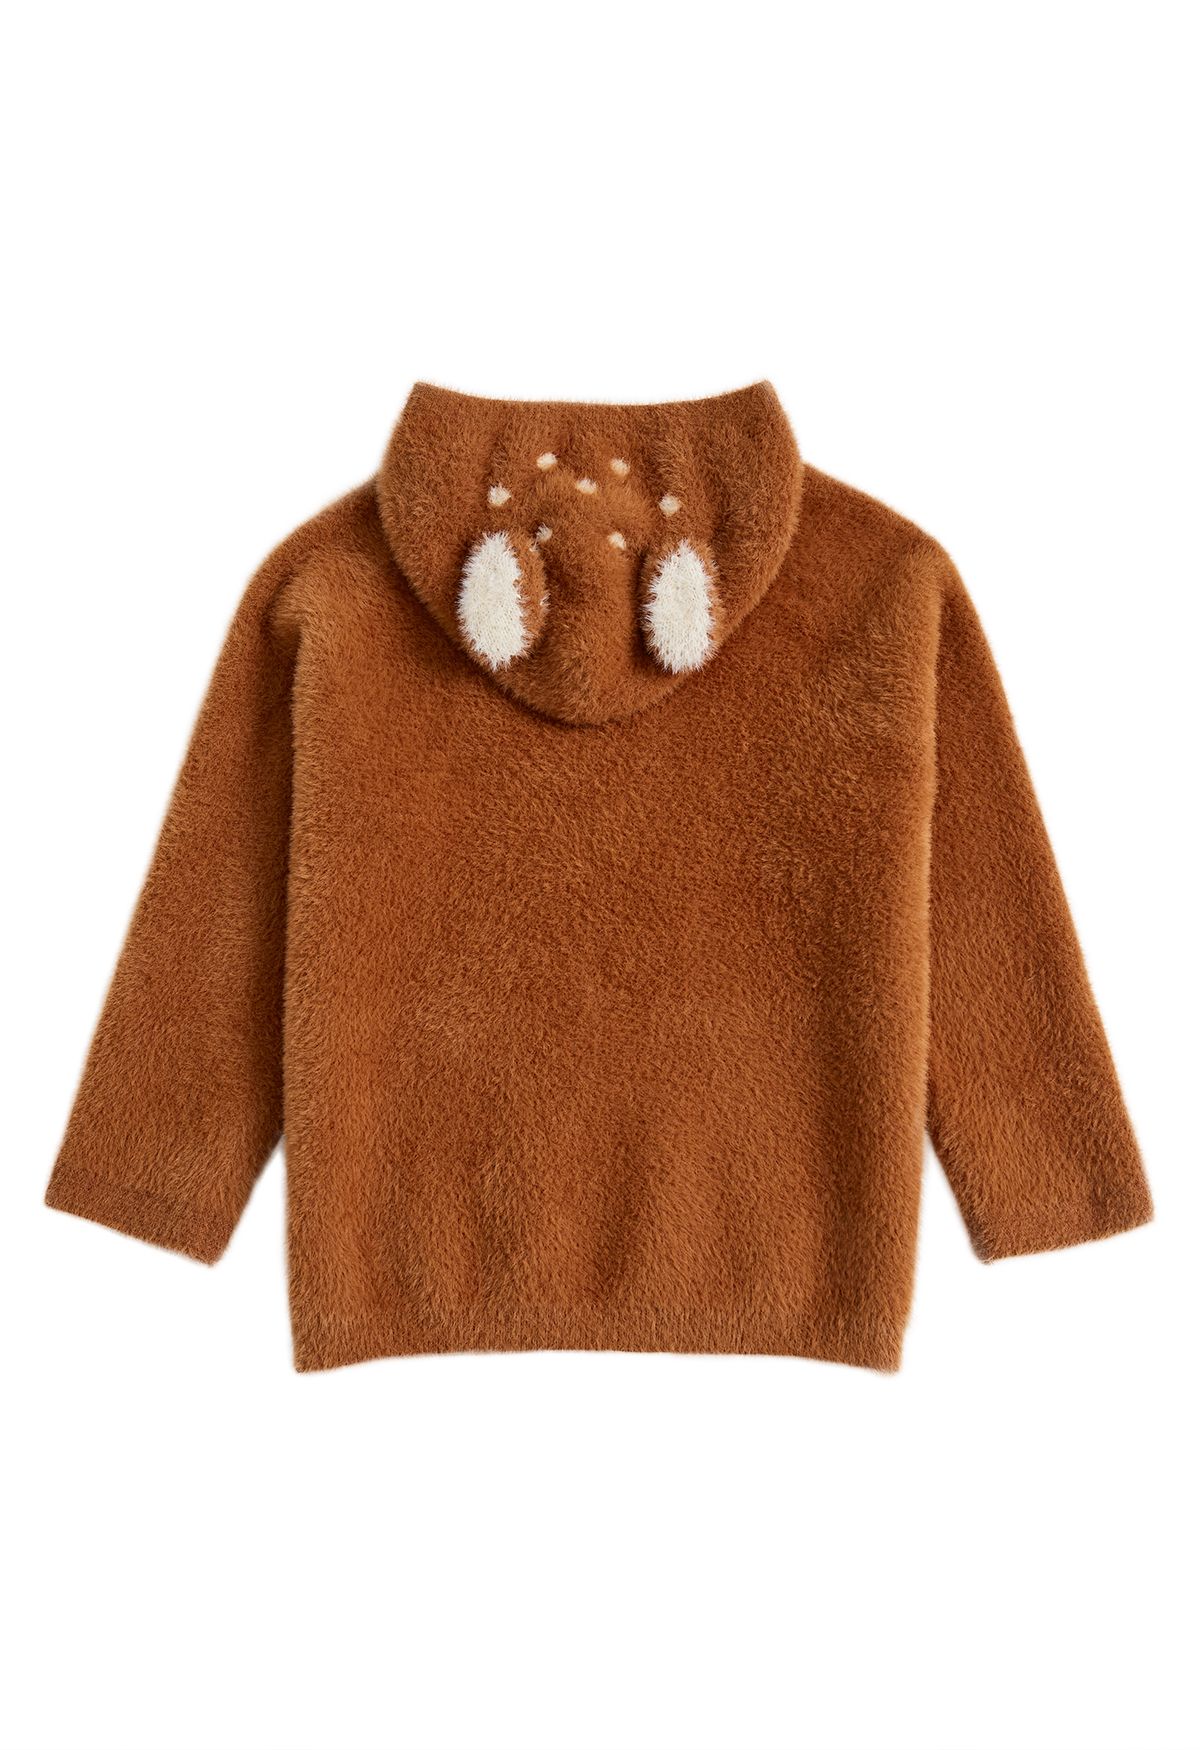 Suéter con capucha Sika Deer Fuzzy Knit en caramelo para niños